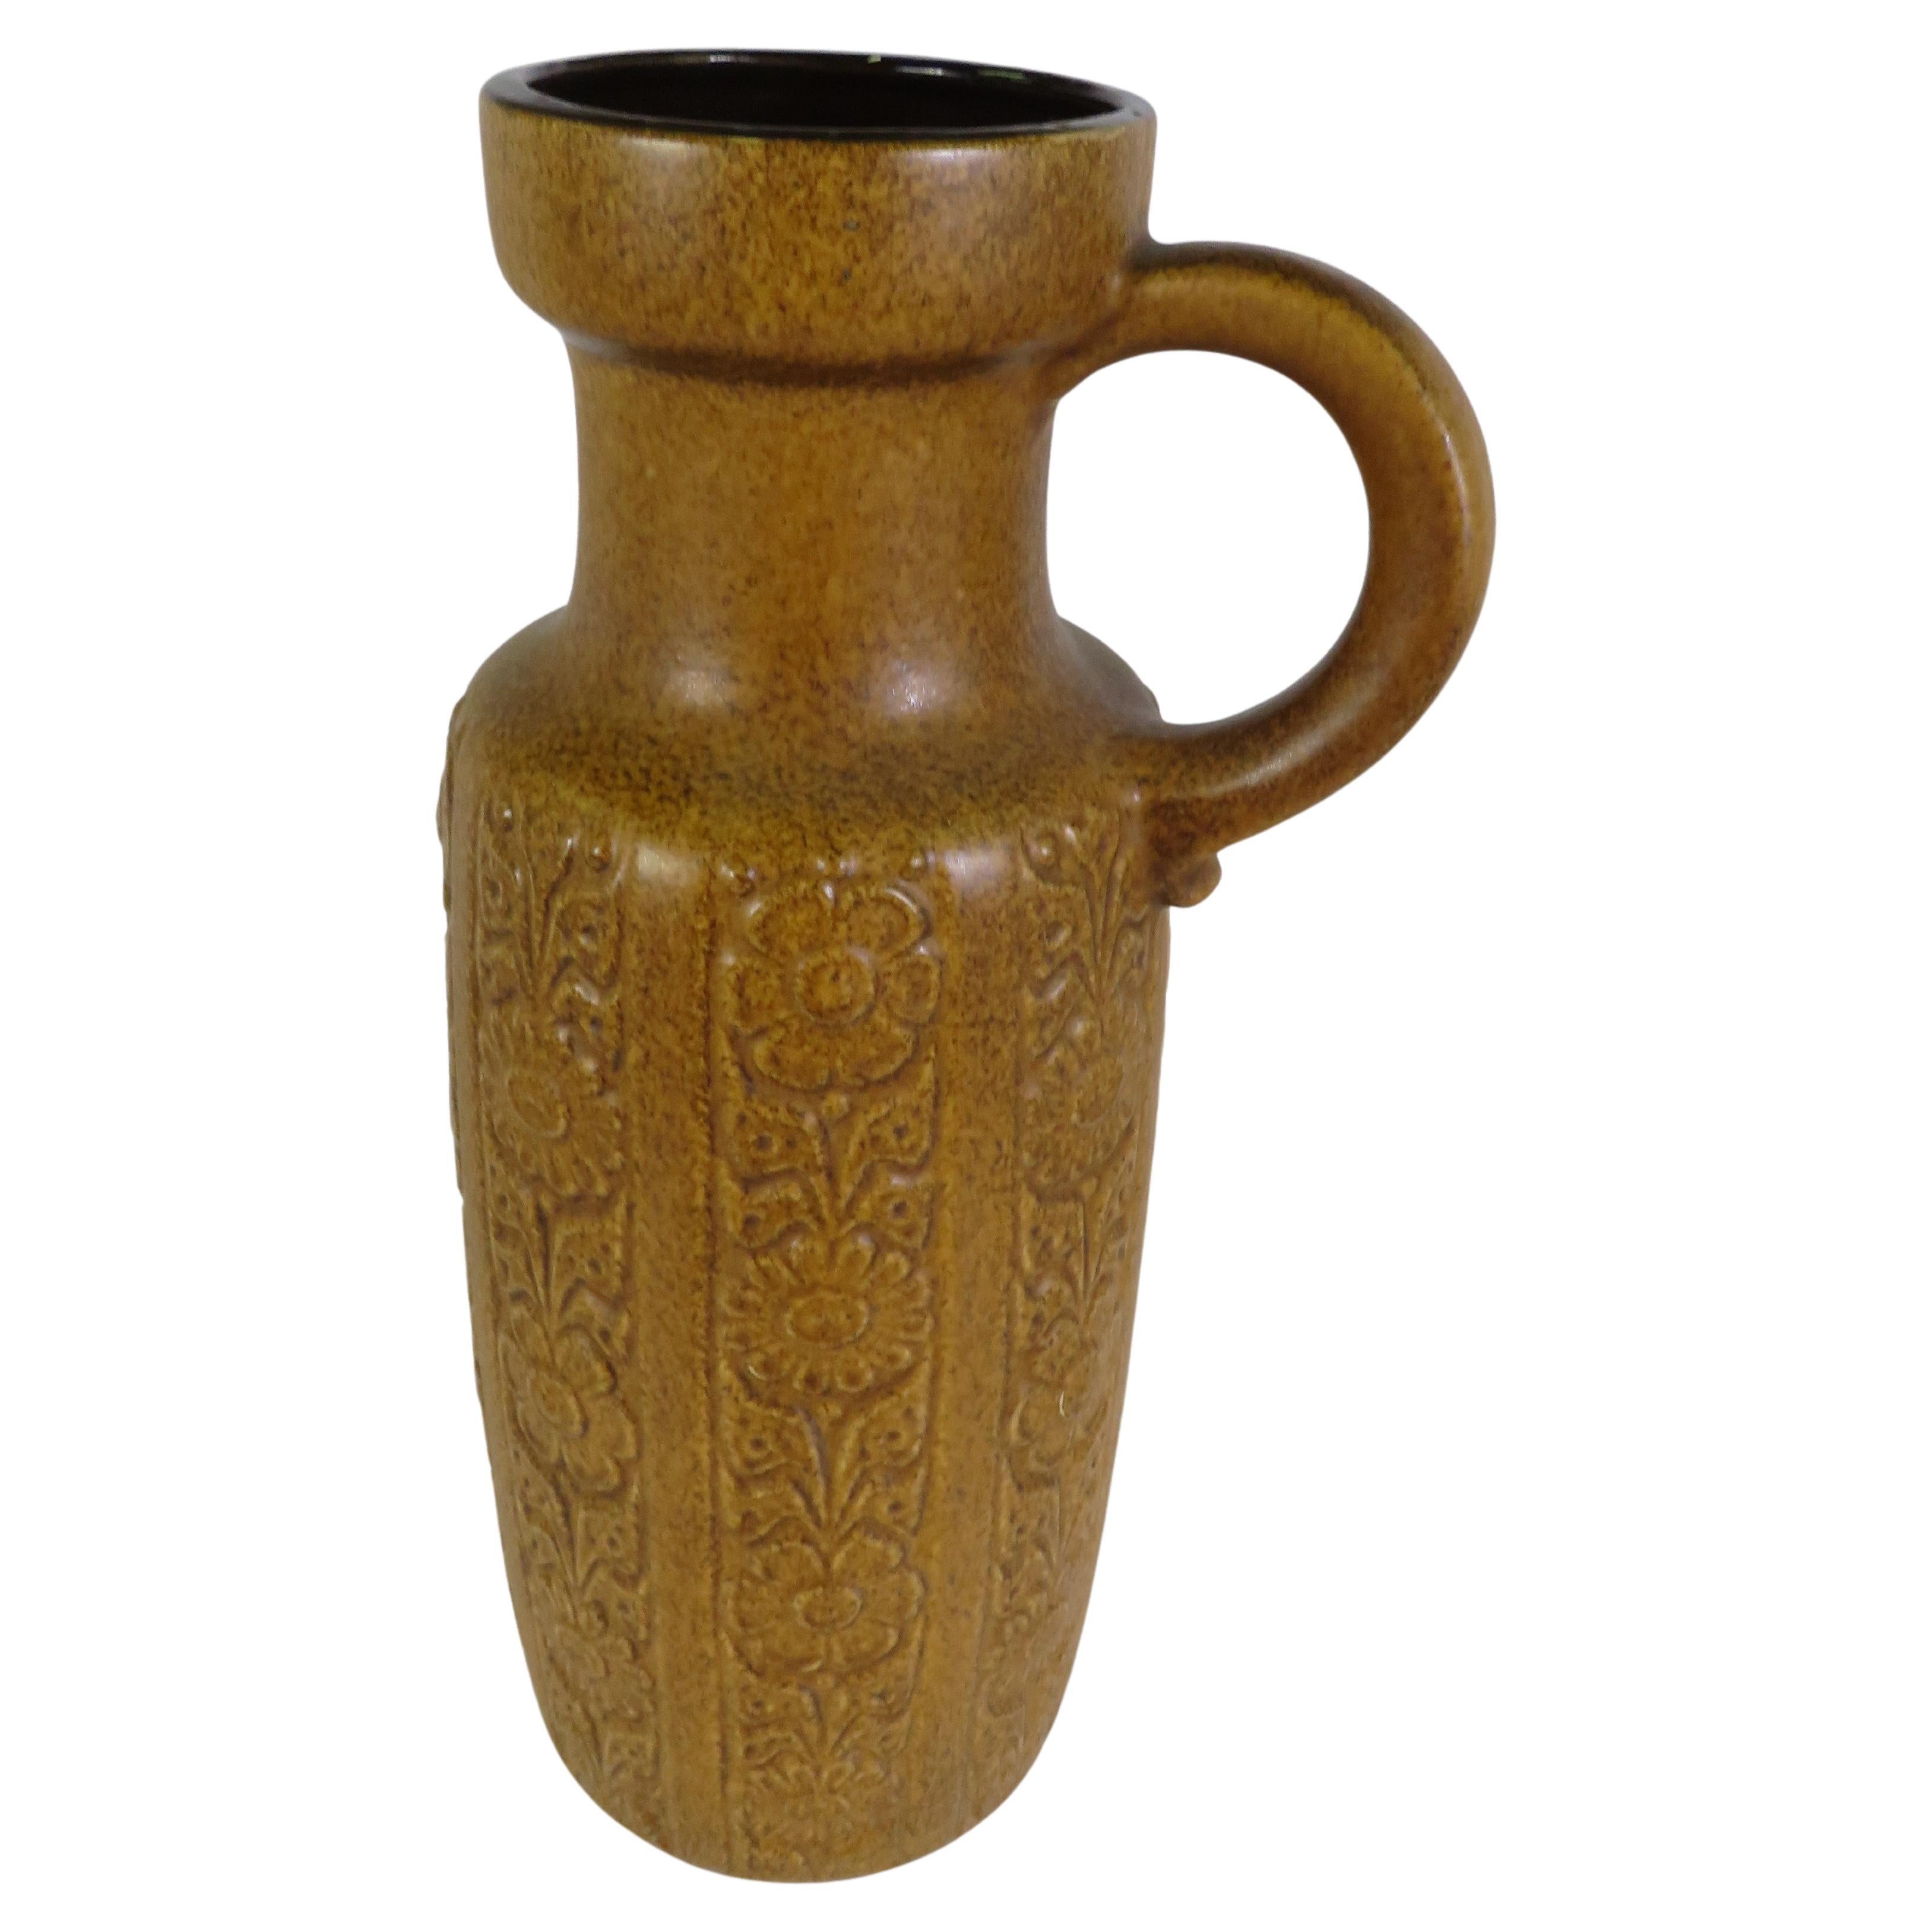 Grand et impressionnant vase à anse de sol ou Krug en poterie allemande du milieu du siècle, provenant de la poterie Scheurich. A l'extérieur, une couleur jaune moutarde tachetée avec un dessin tridimensionnel de fleurs en bandes perpendiculaires et